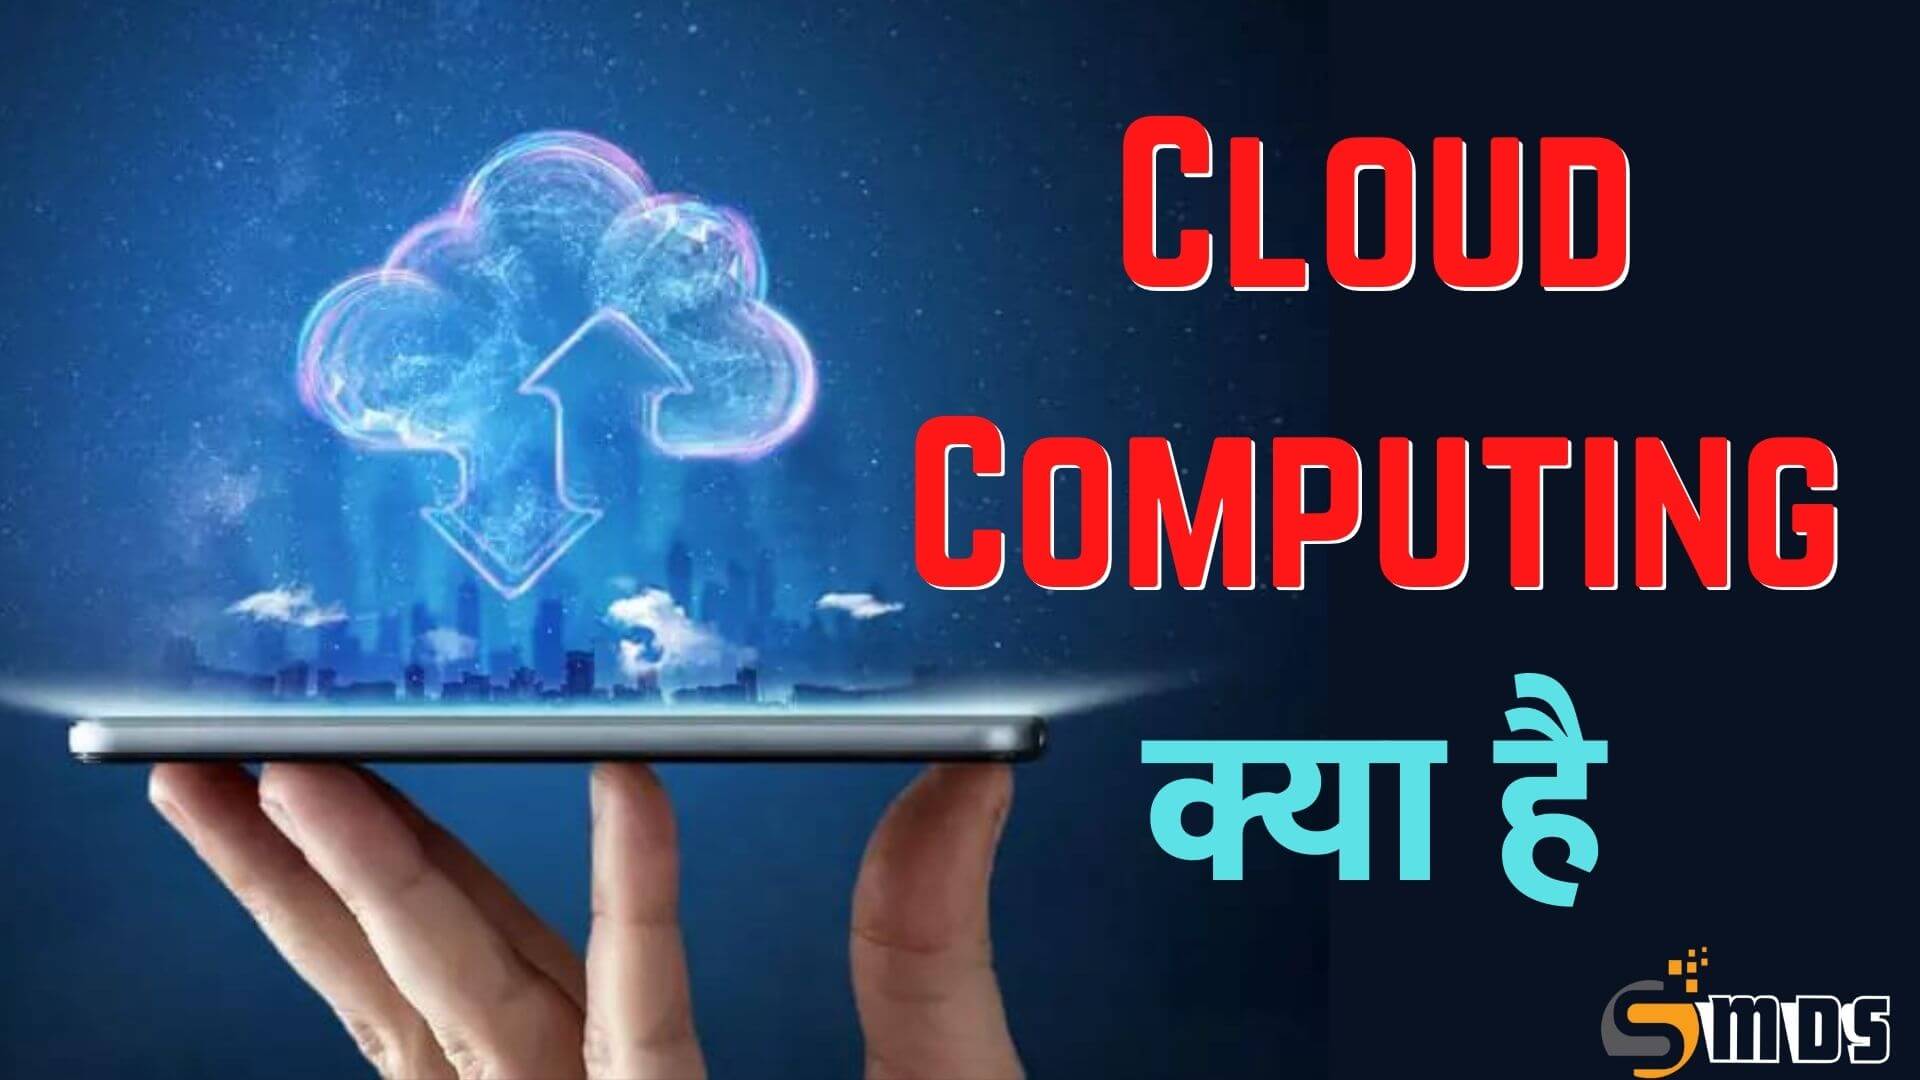 क्लाउड कंप्यूटिंग क्या है - What is Cloud computing in Hindi, cloud computing kya hai, क्लाउड कंप्यूटिंग के लाभ, Benefits of Cloud computing in Hindi